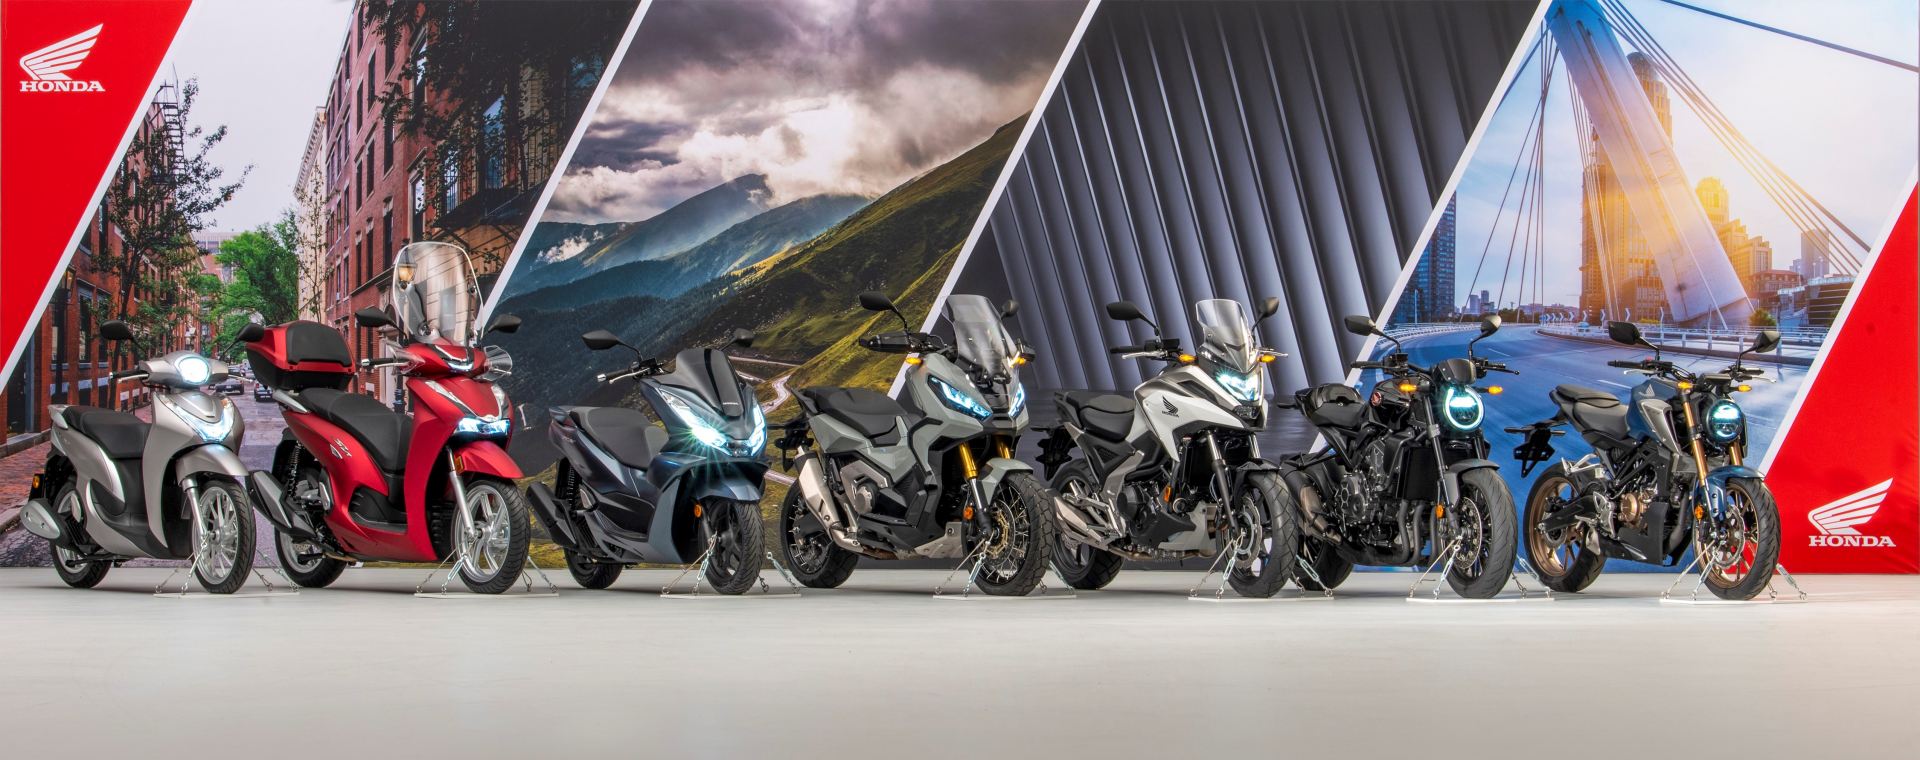 HONDA: Modelle seines umfassenden europäischen Motorrad Line Up‘s 2021